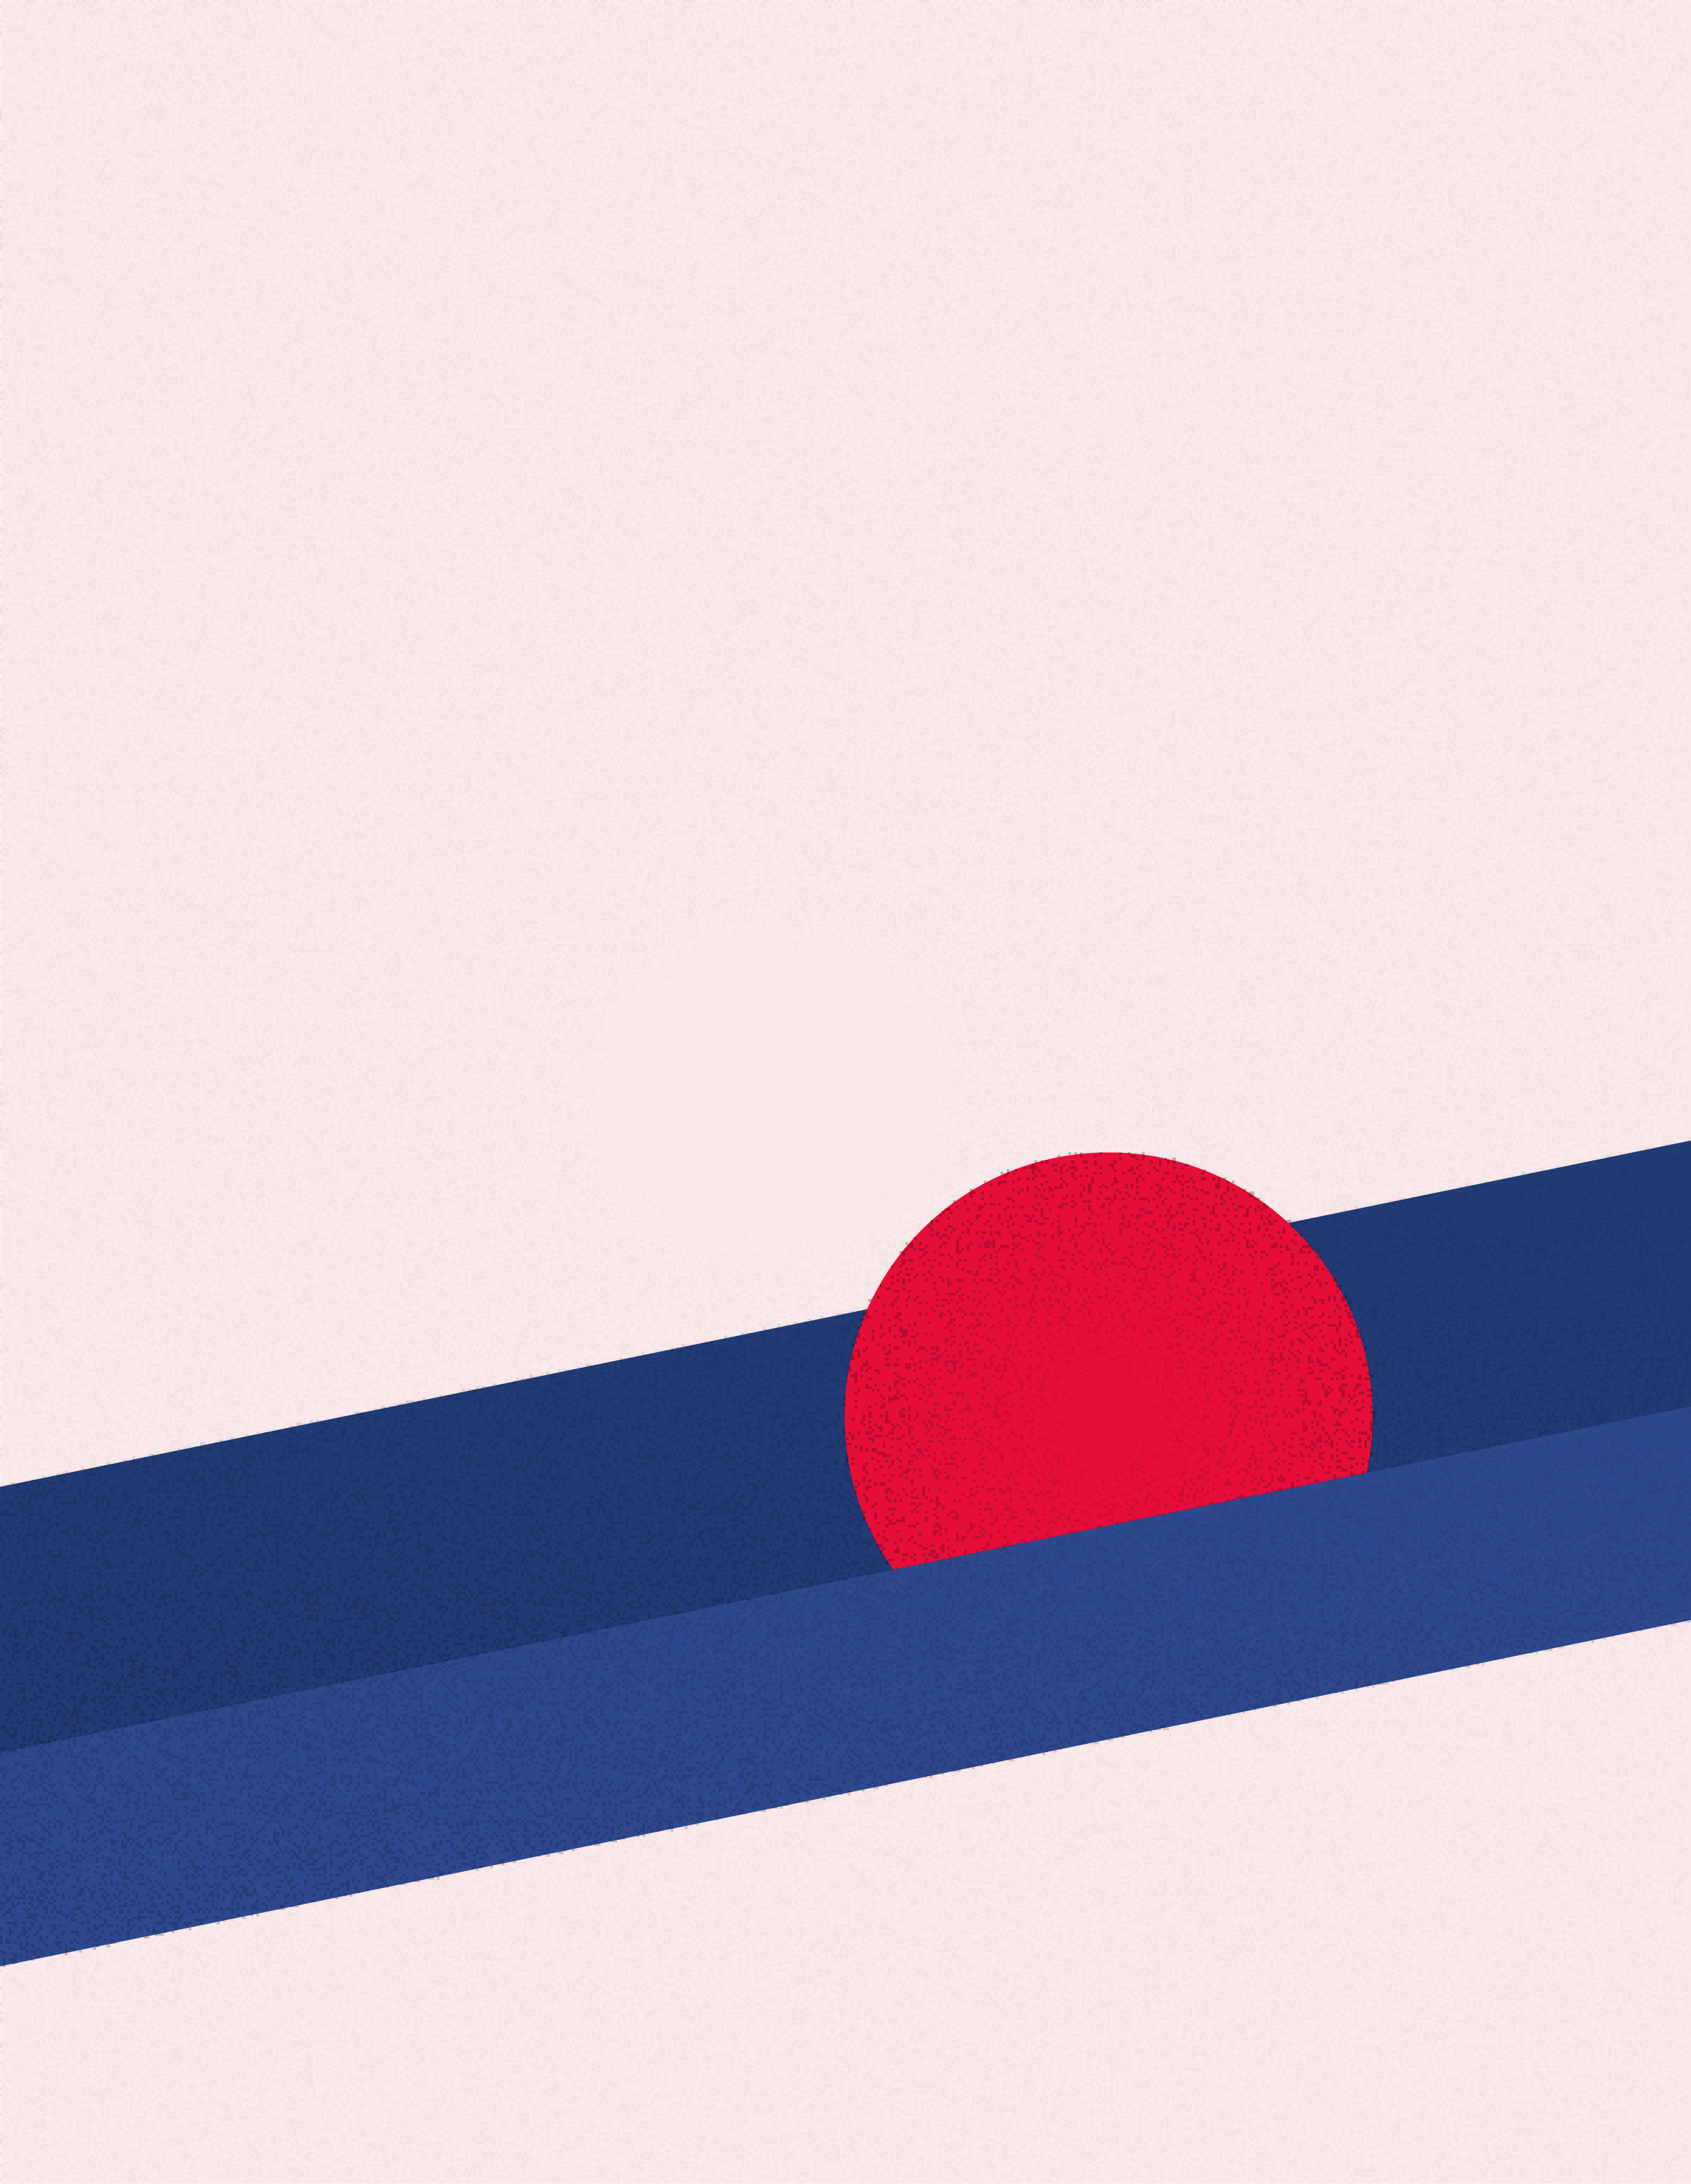 Illustration einer blauen schiefen Ebene, auf der ein roter Ball von rechts nach links rollt.